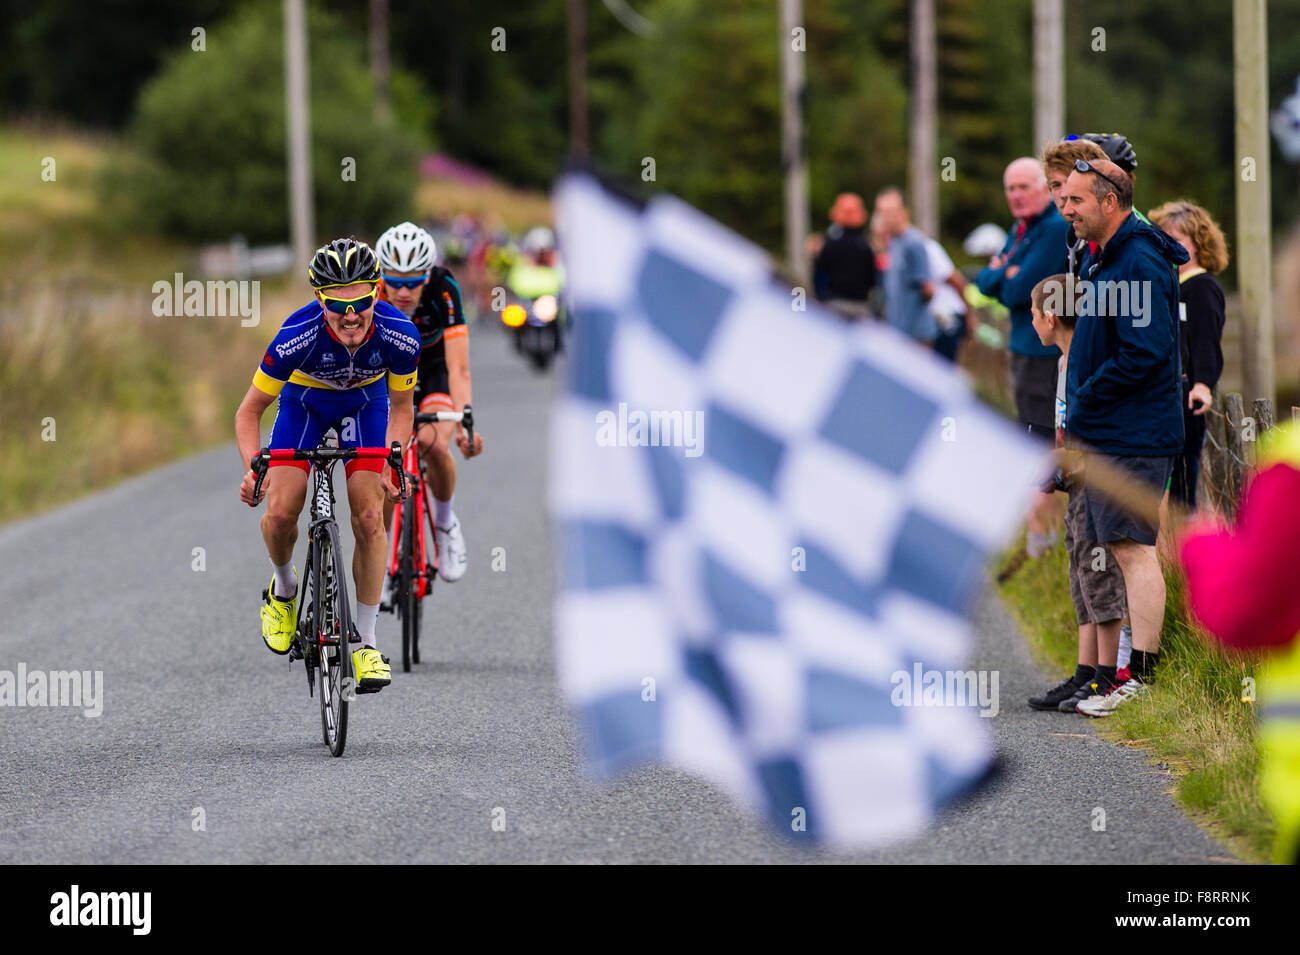 Course concurrents pour le drapeau à damier à la ligne d'arrivée à l'assemblée annuelle de la 'Tour des vallées minières Course sur route, près d'Aberystwyth, Pays de Galles, Royaume-Uni 16 Août 2015 Banque D'Images